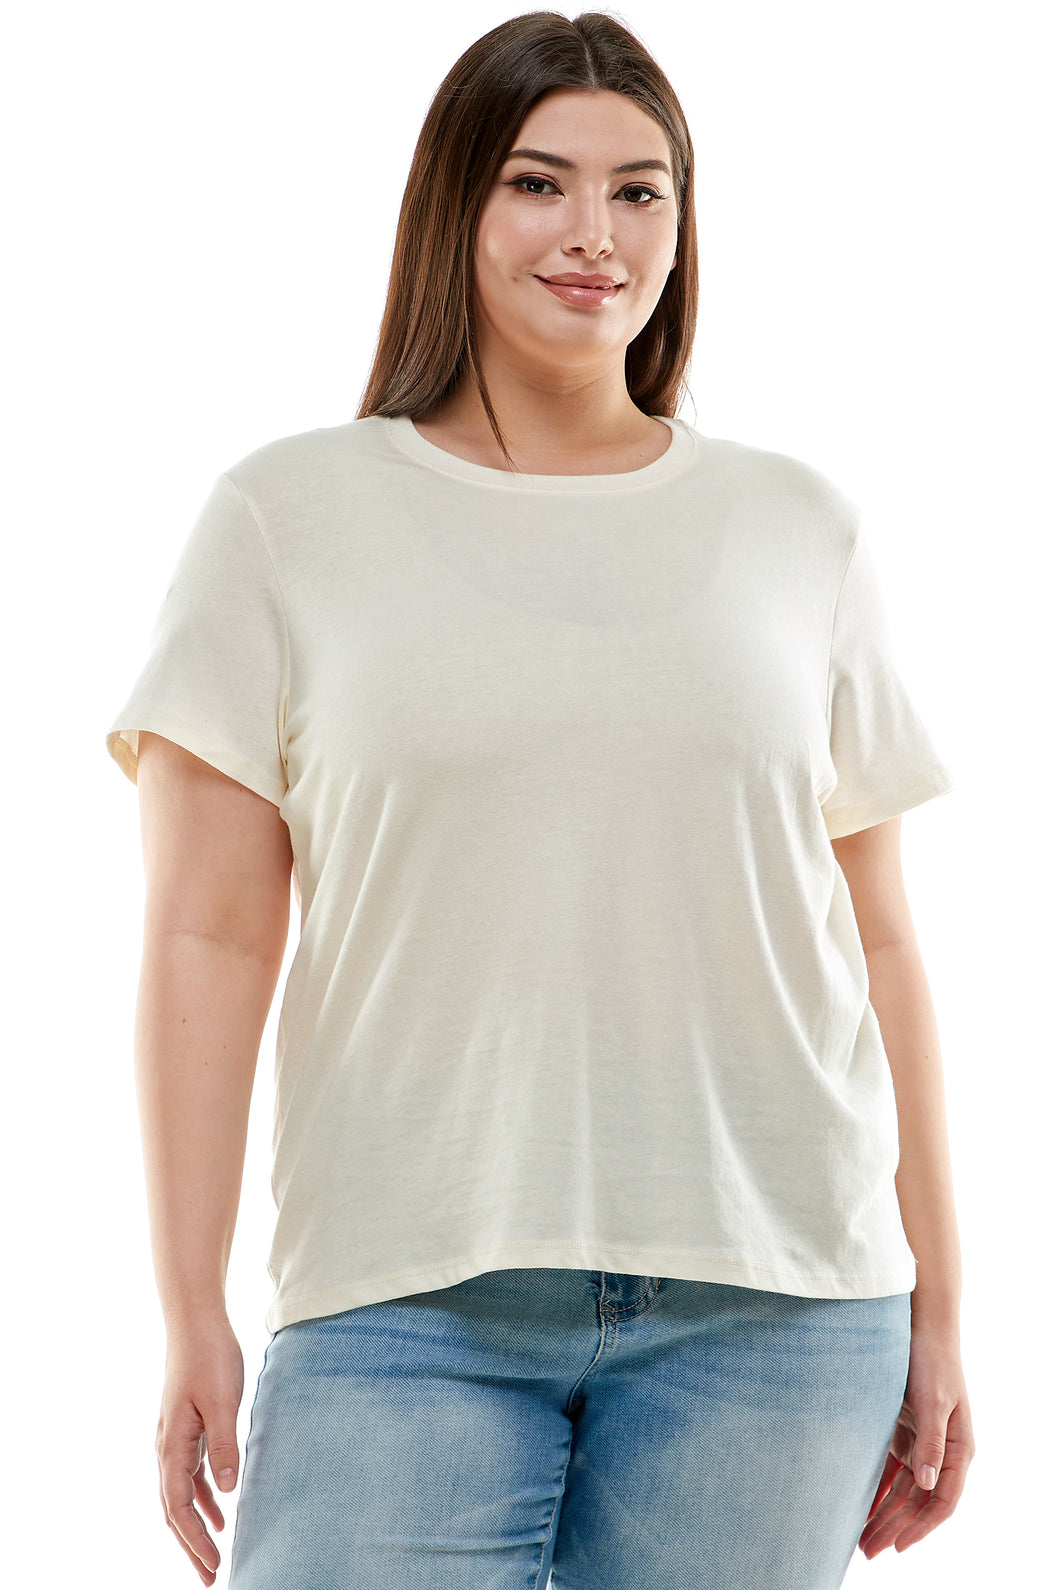 Plus Size Basic Short Sleeve Tee Shirt | Ivory